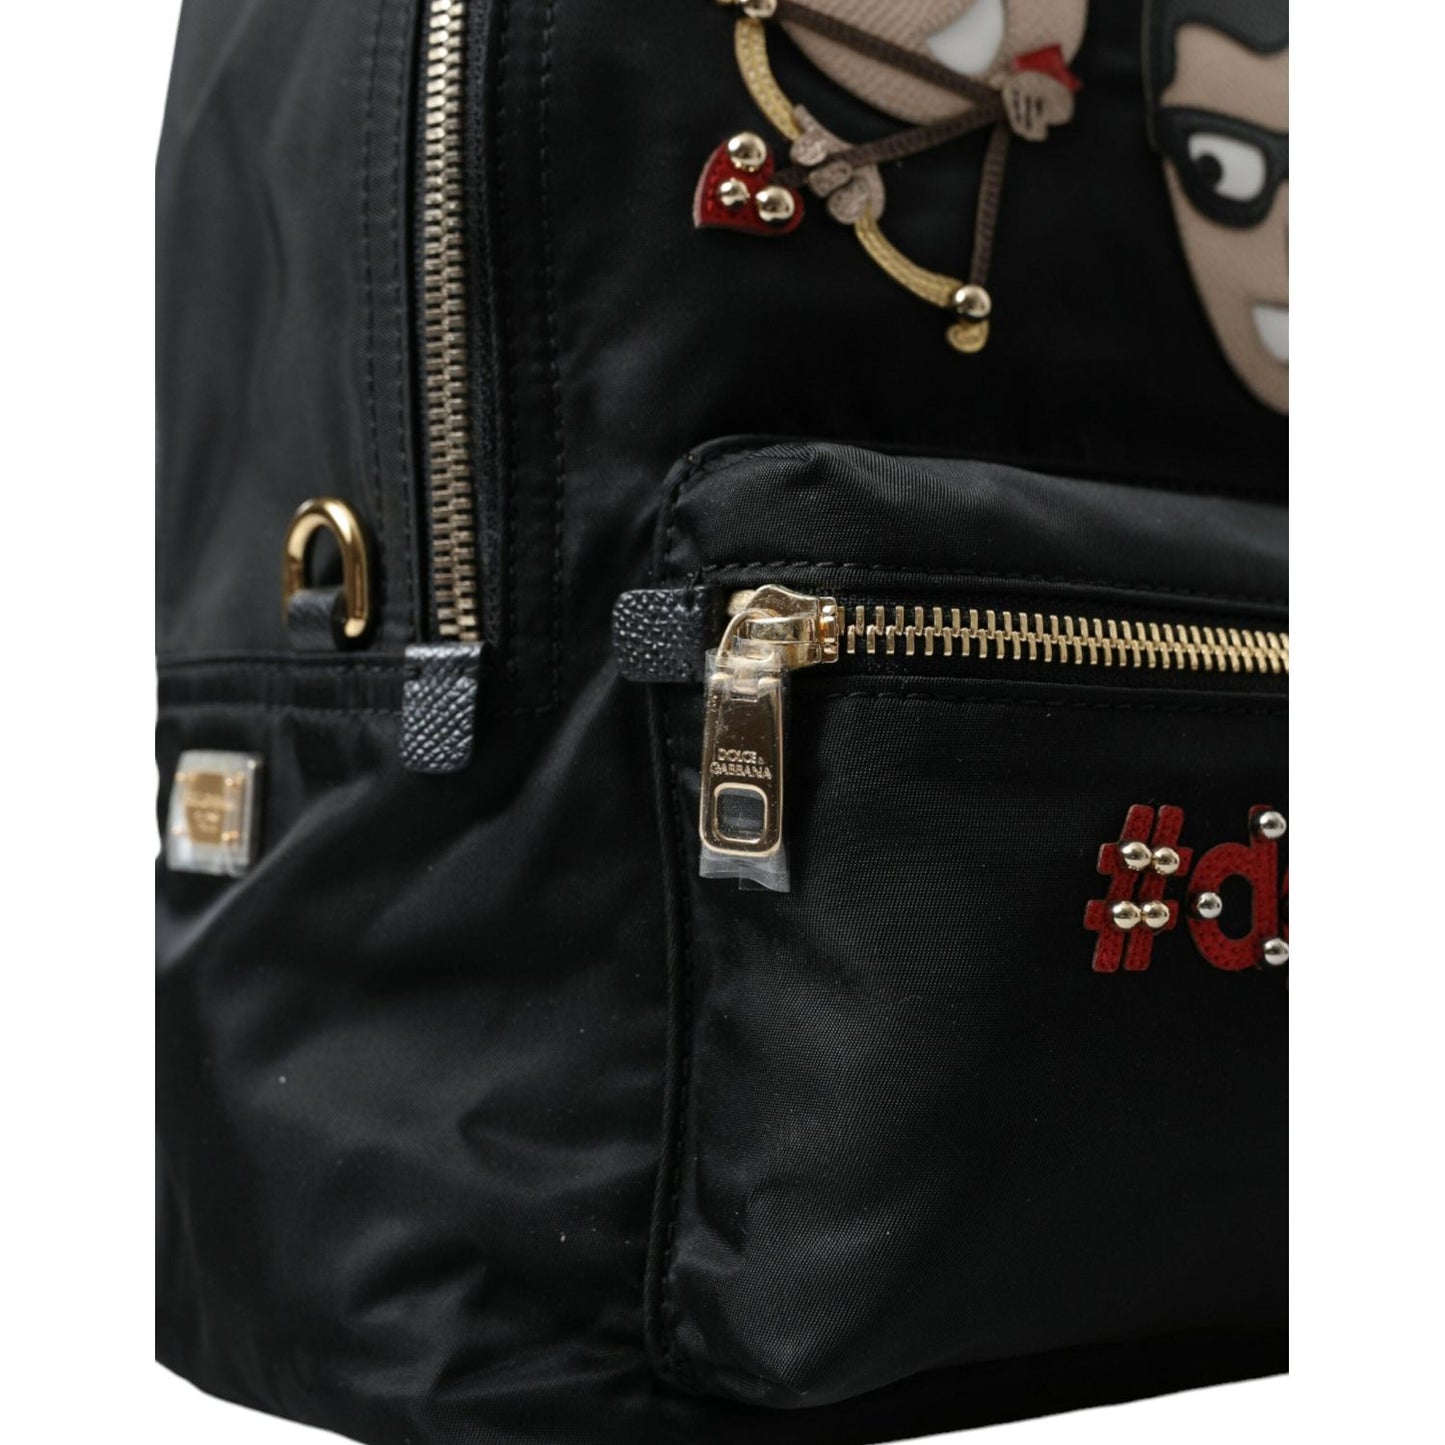 Dolce & GabbanaElegant Embellished Black BackpackMcRichard Designer Brands£649.00